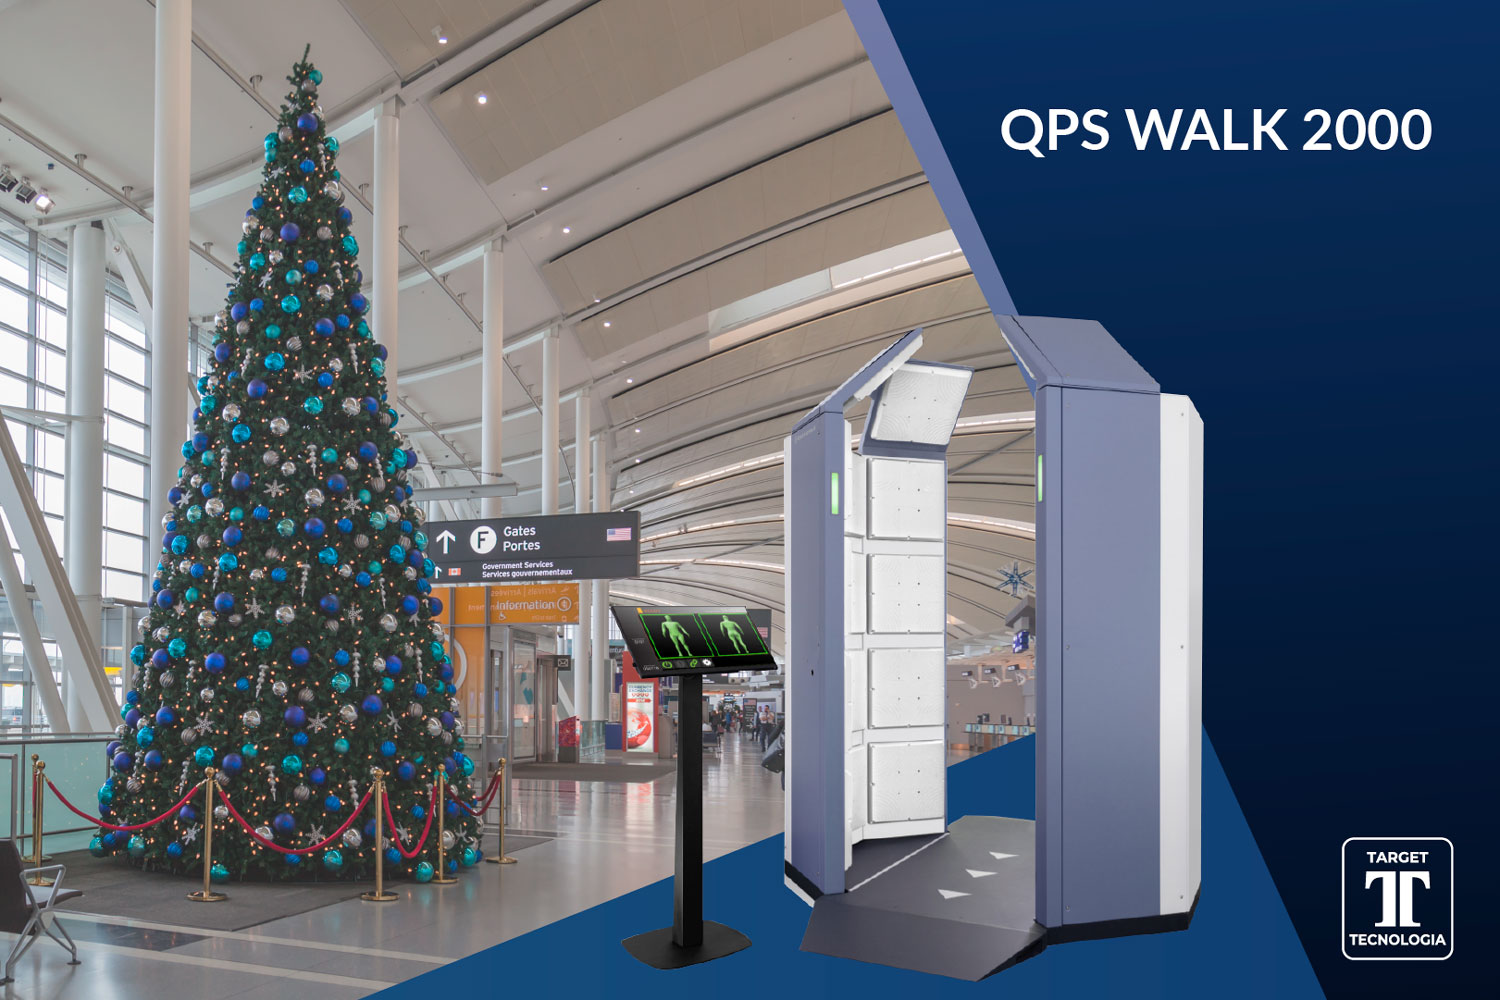 Nuevo escáner QPS Walk 2000 de Target Tecnología para la detección en control de accesos .